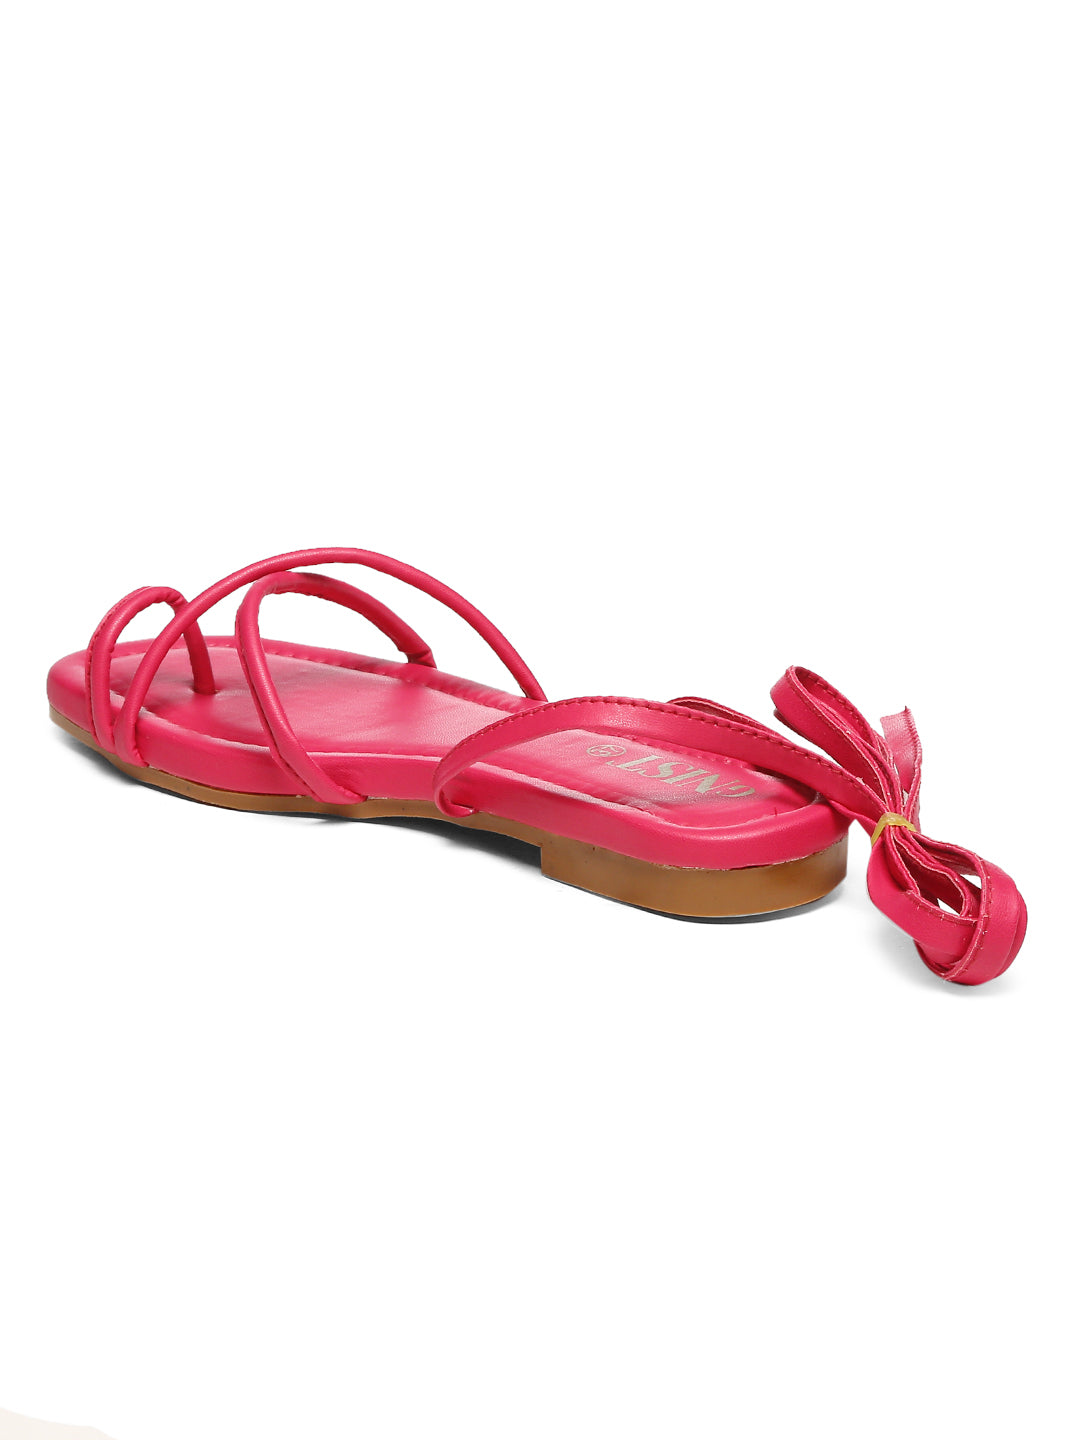 GNIST Hot Pink Tie up Flat Sandal